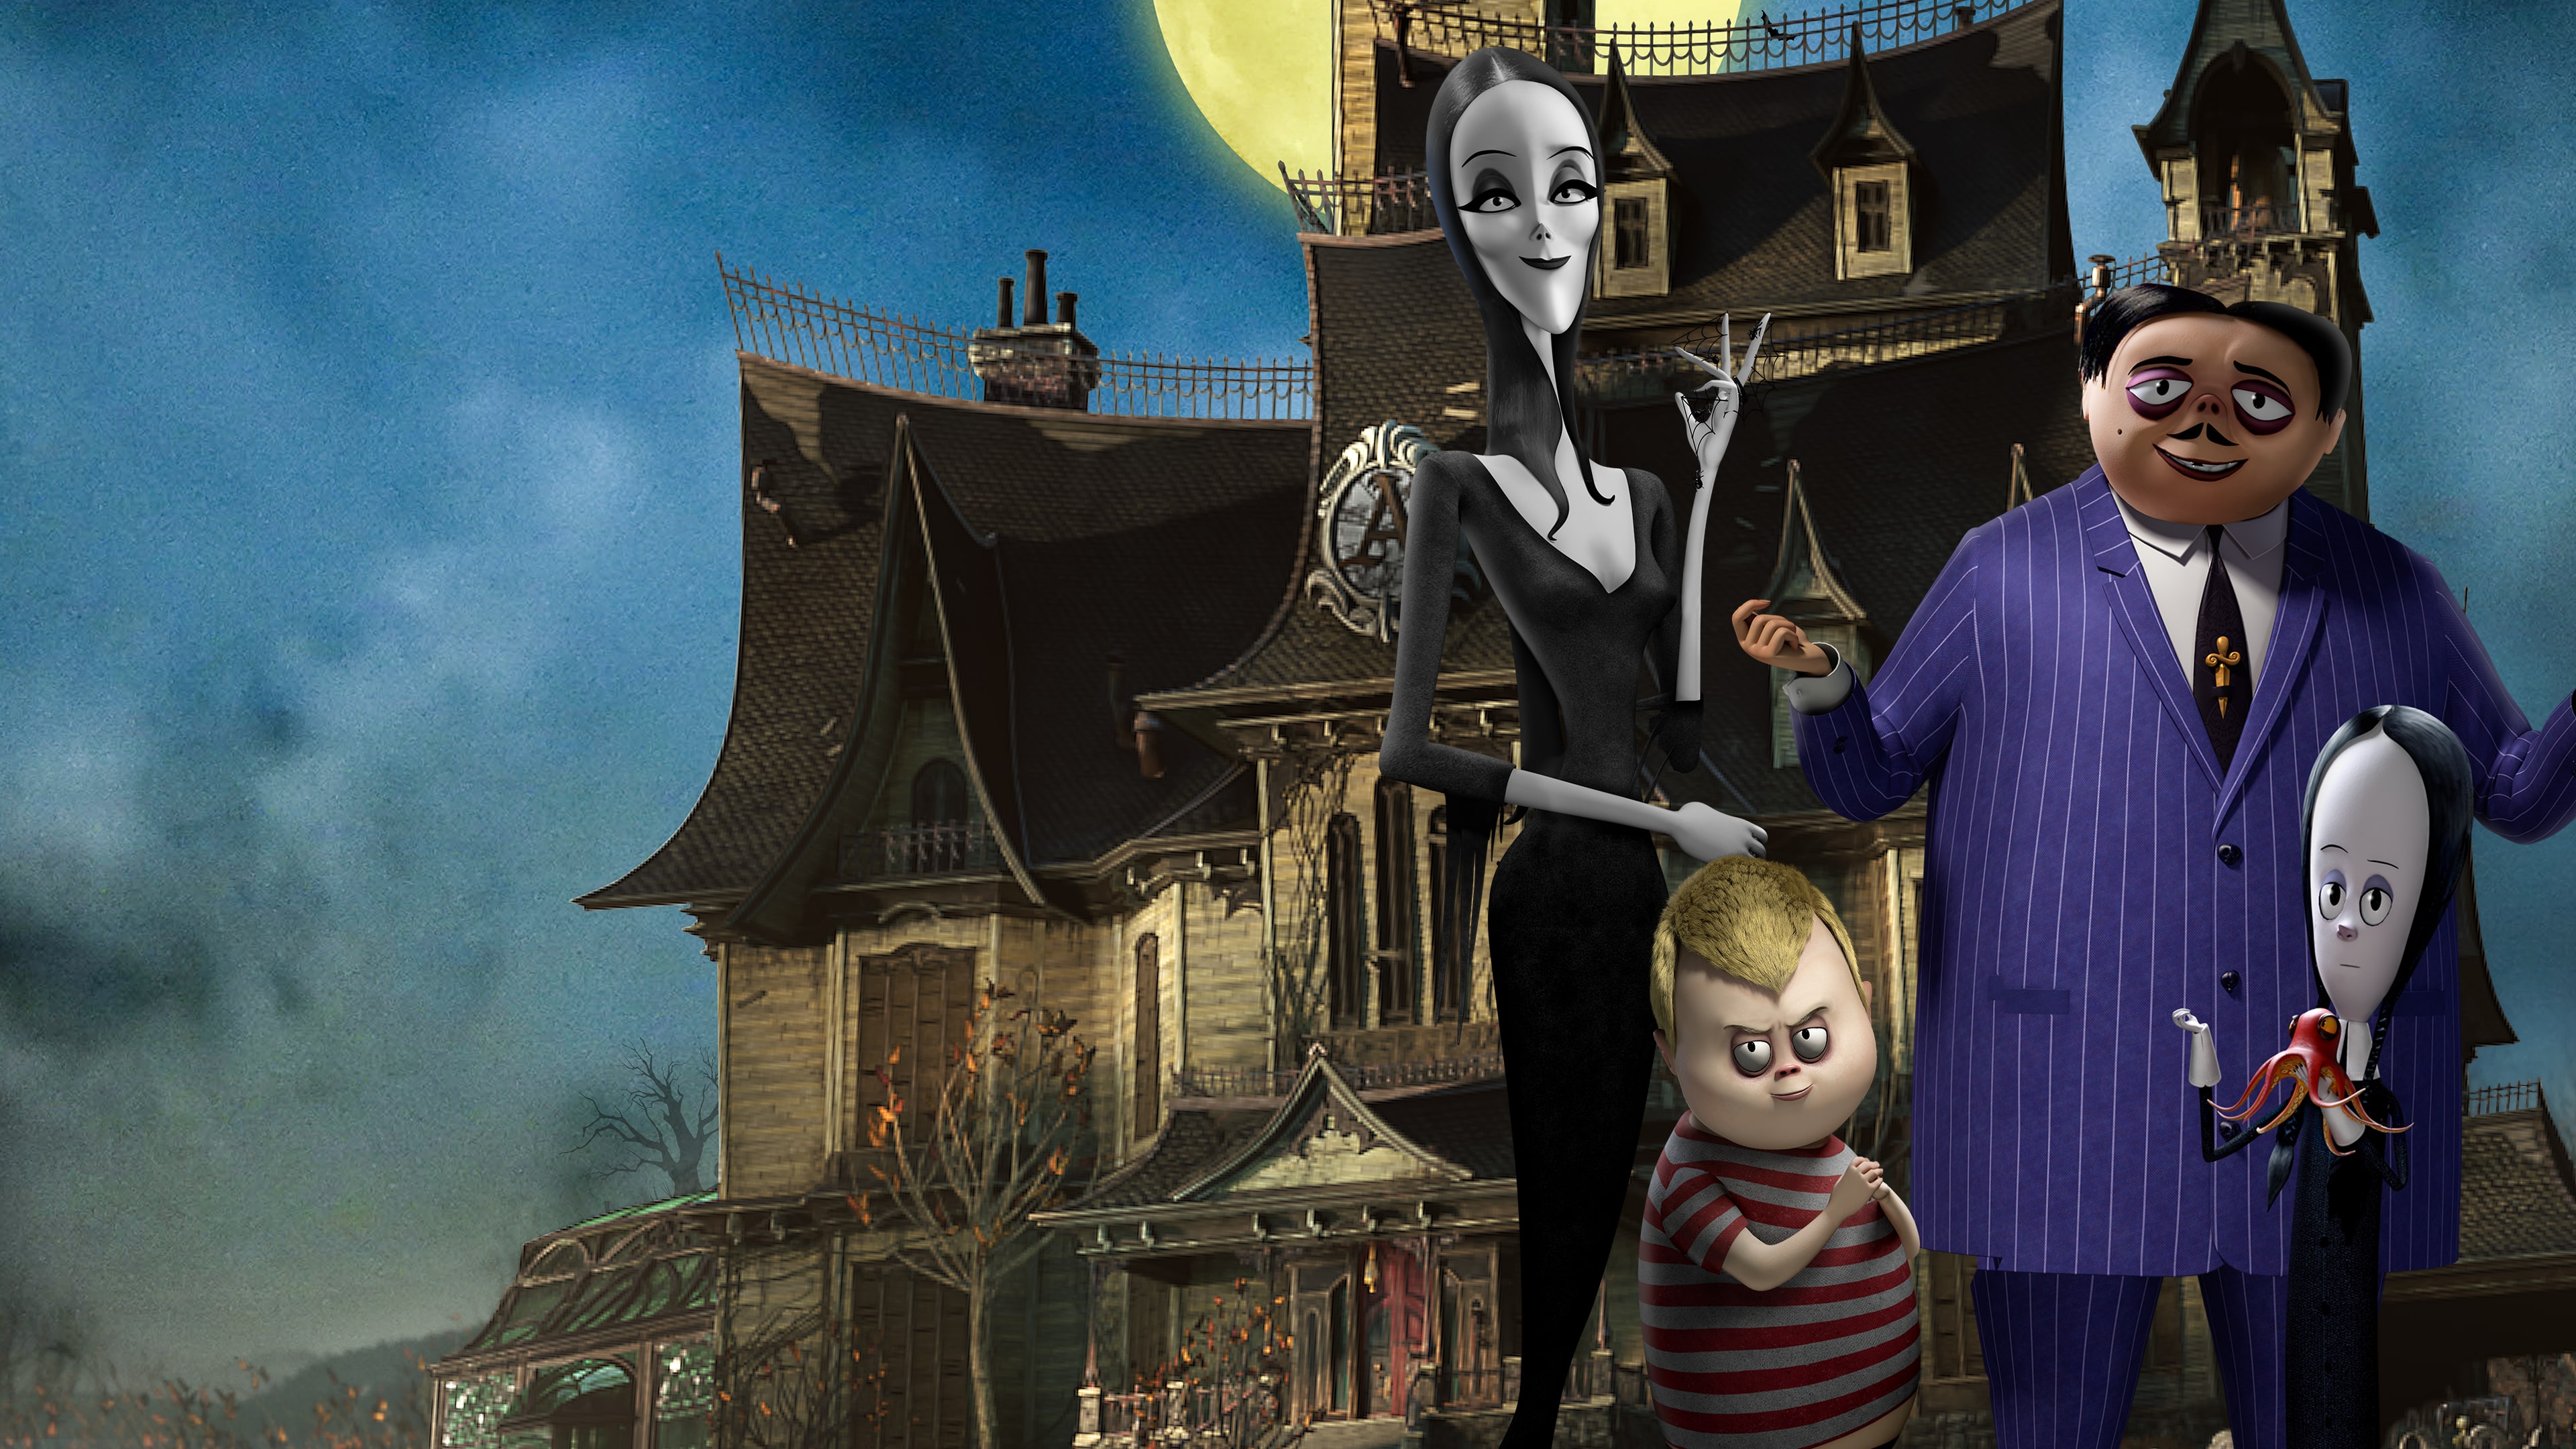 A Familía Addams: Caos na mansão